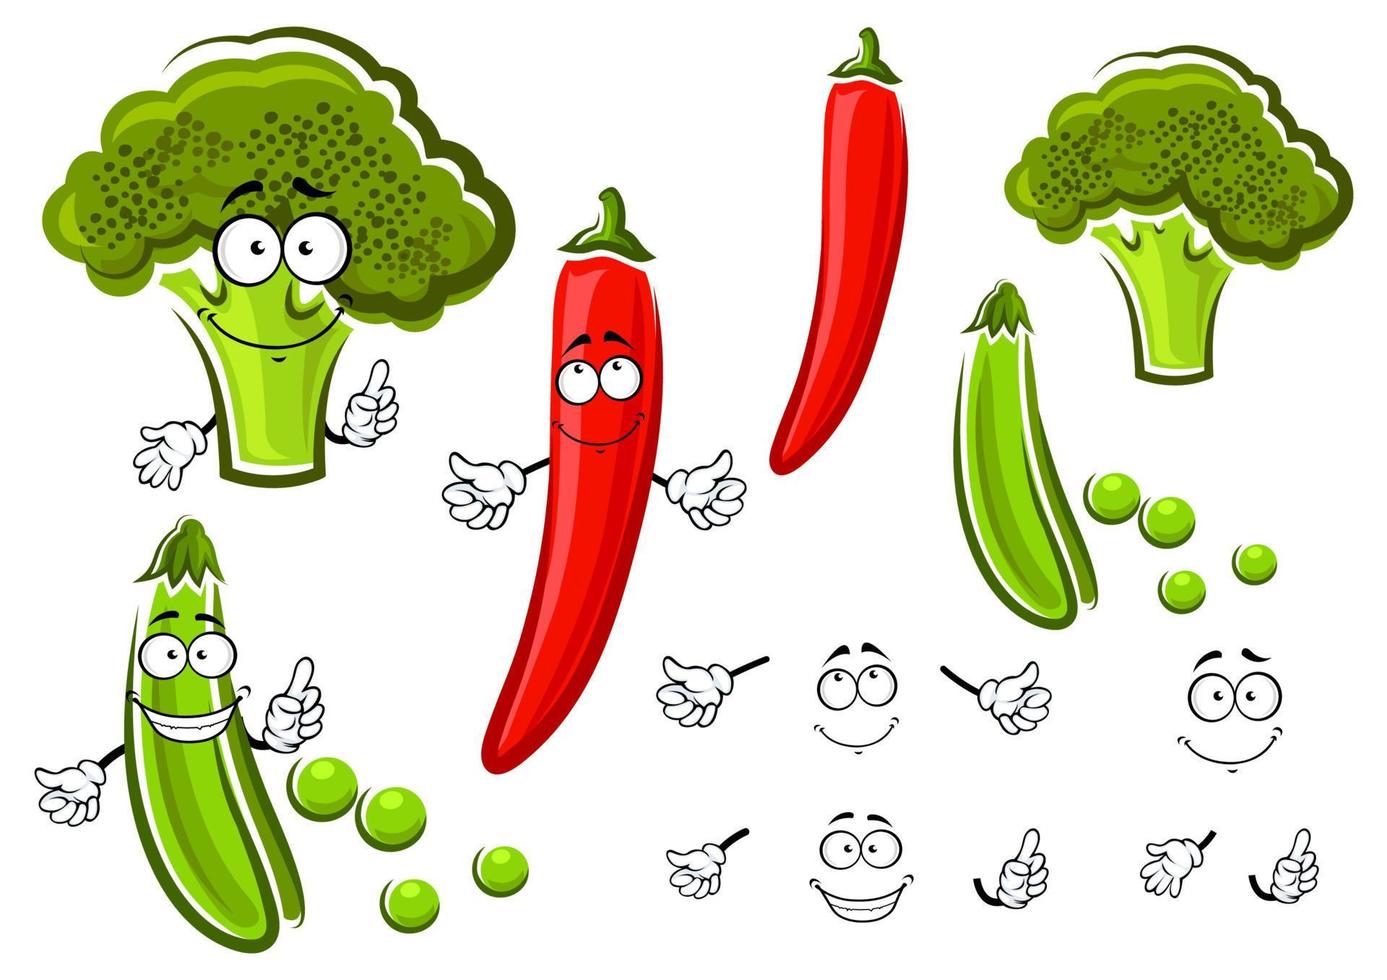 groen erwt, broccoli en chili peper vector